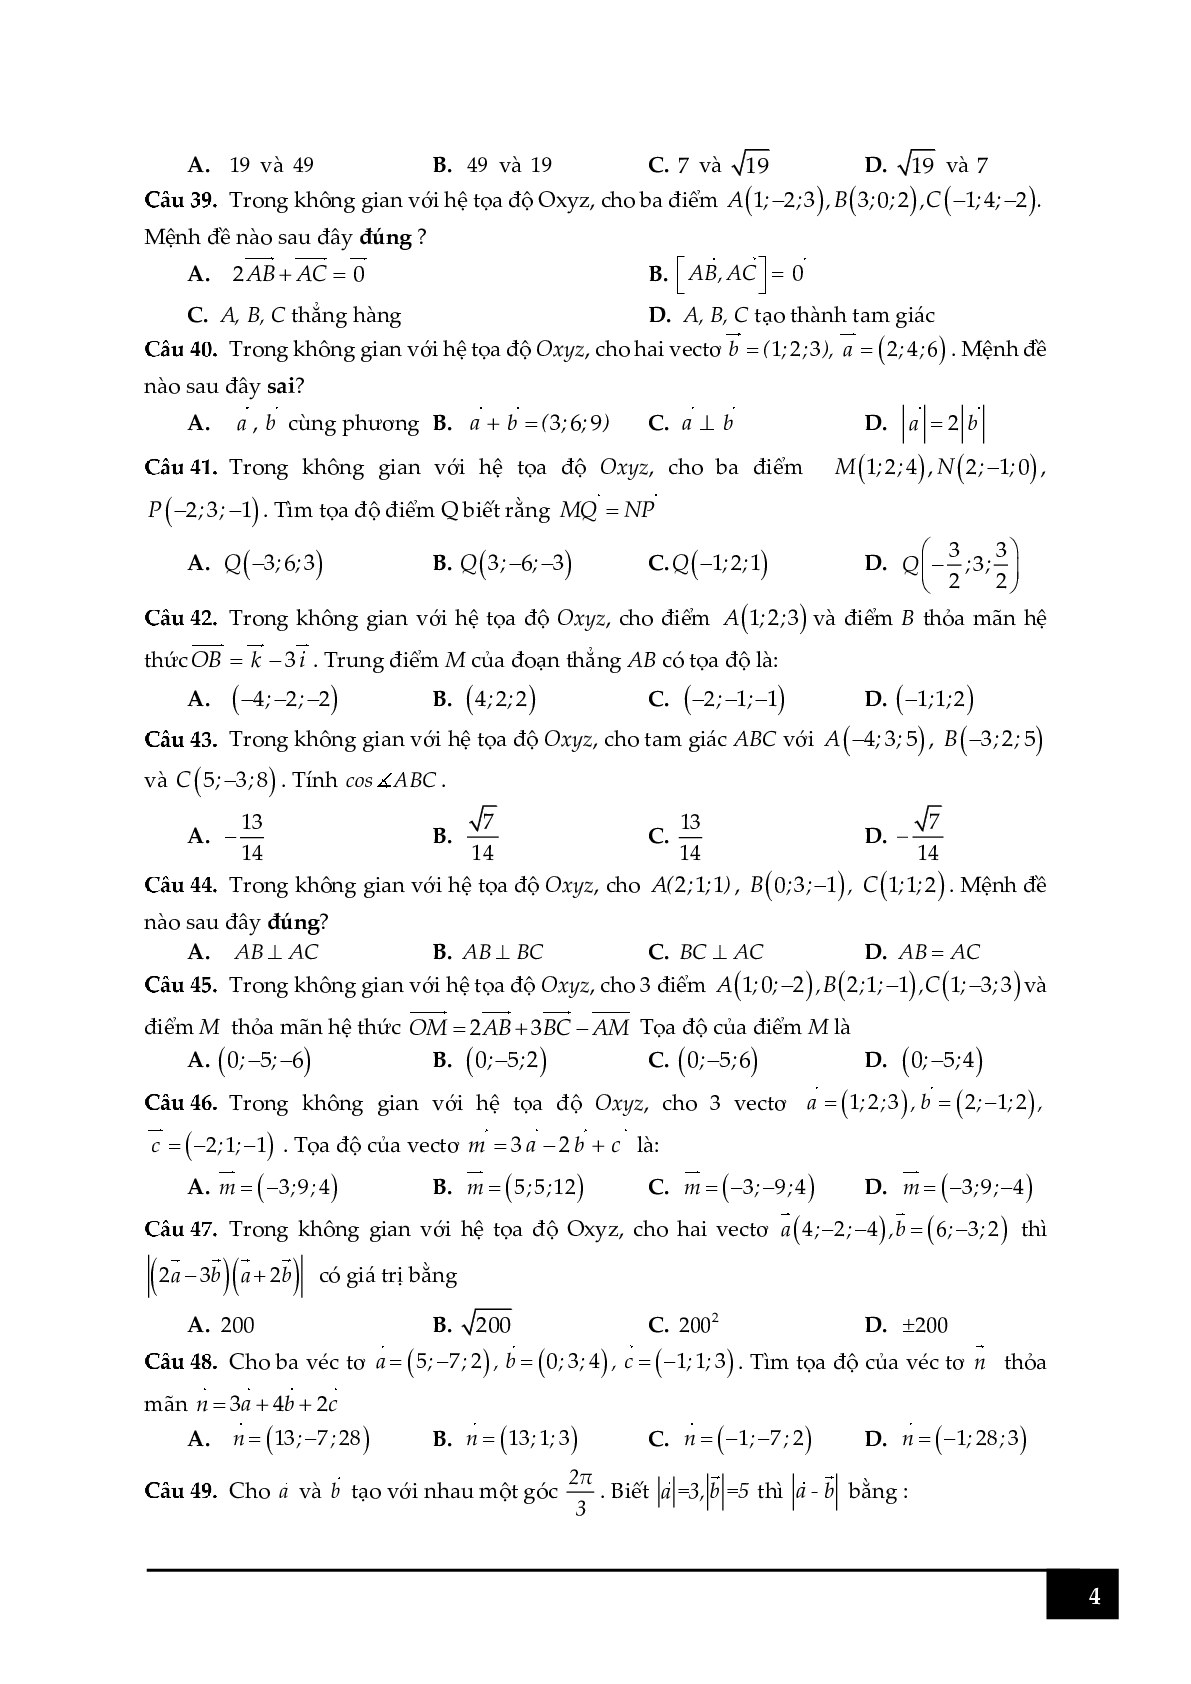 100 câu hỏi trắc nghiệm về tọa độ điểm trong Oxyz (trang 4)